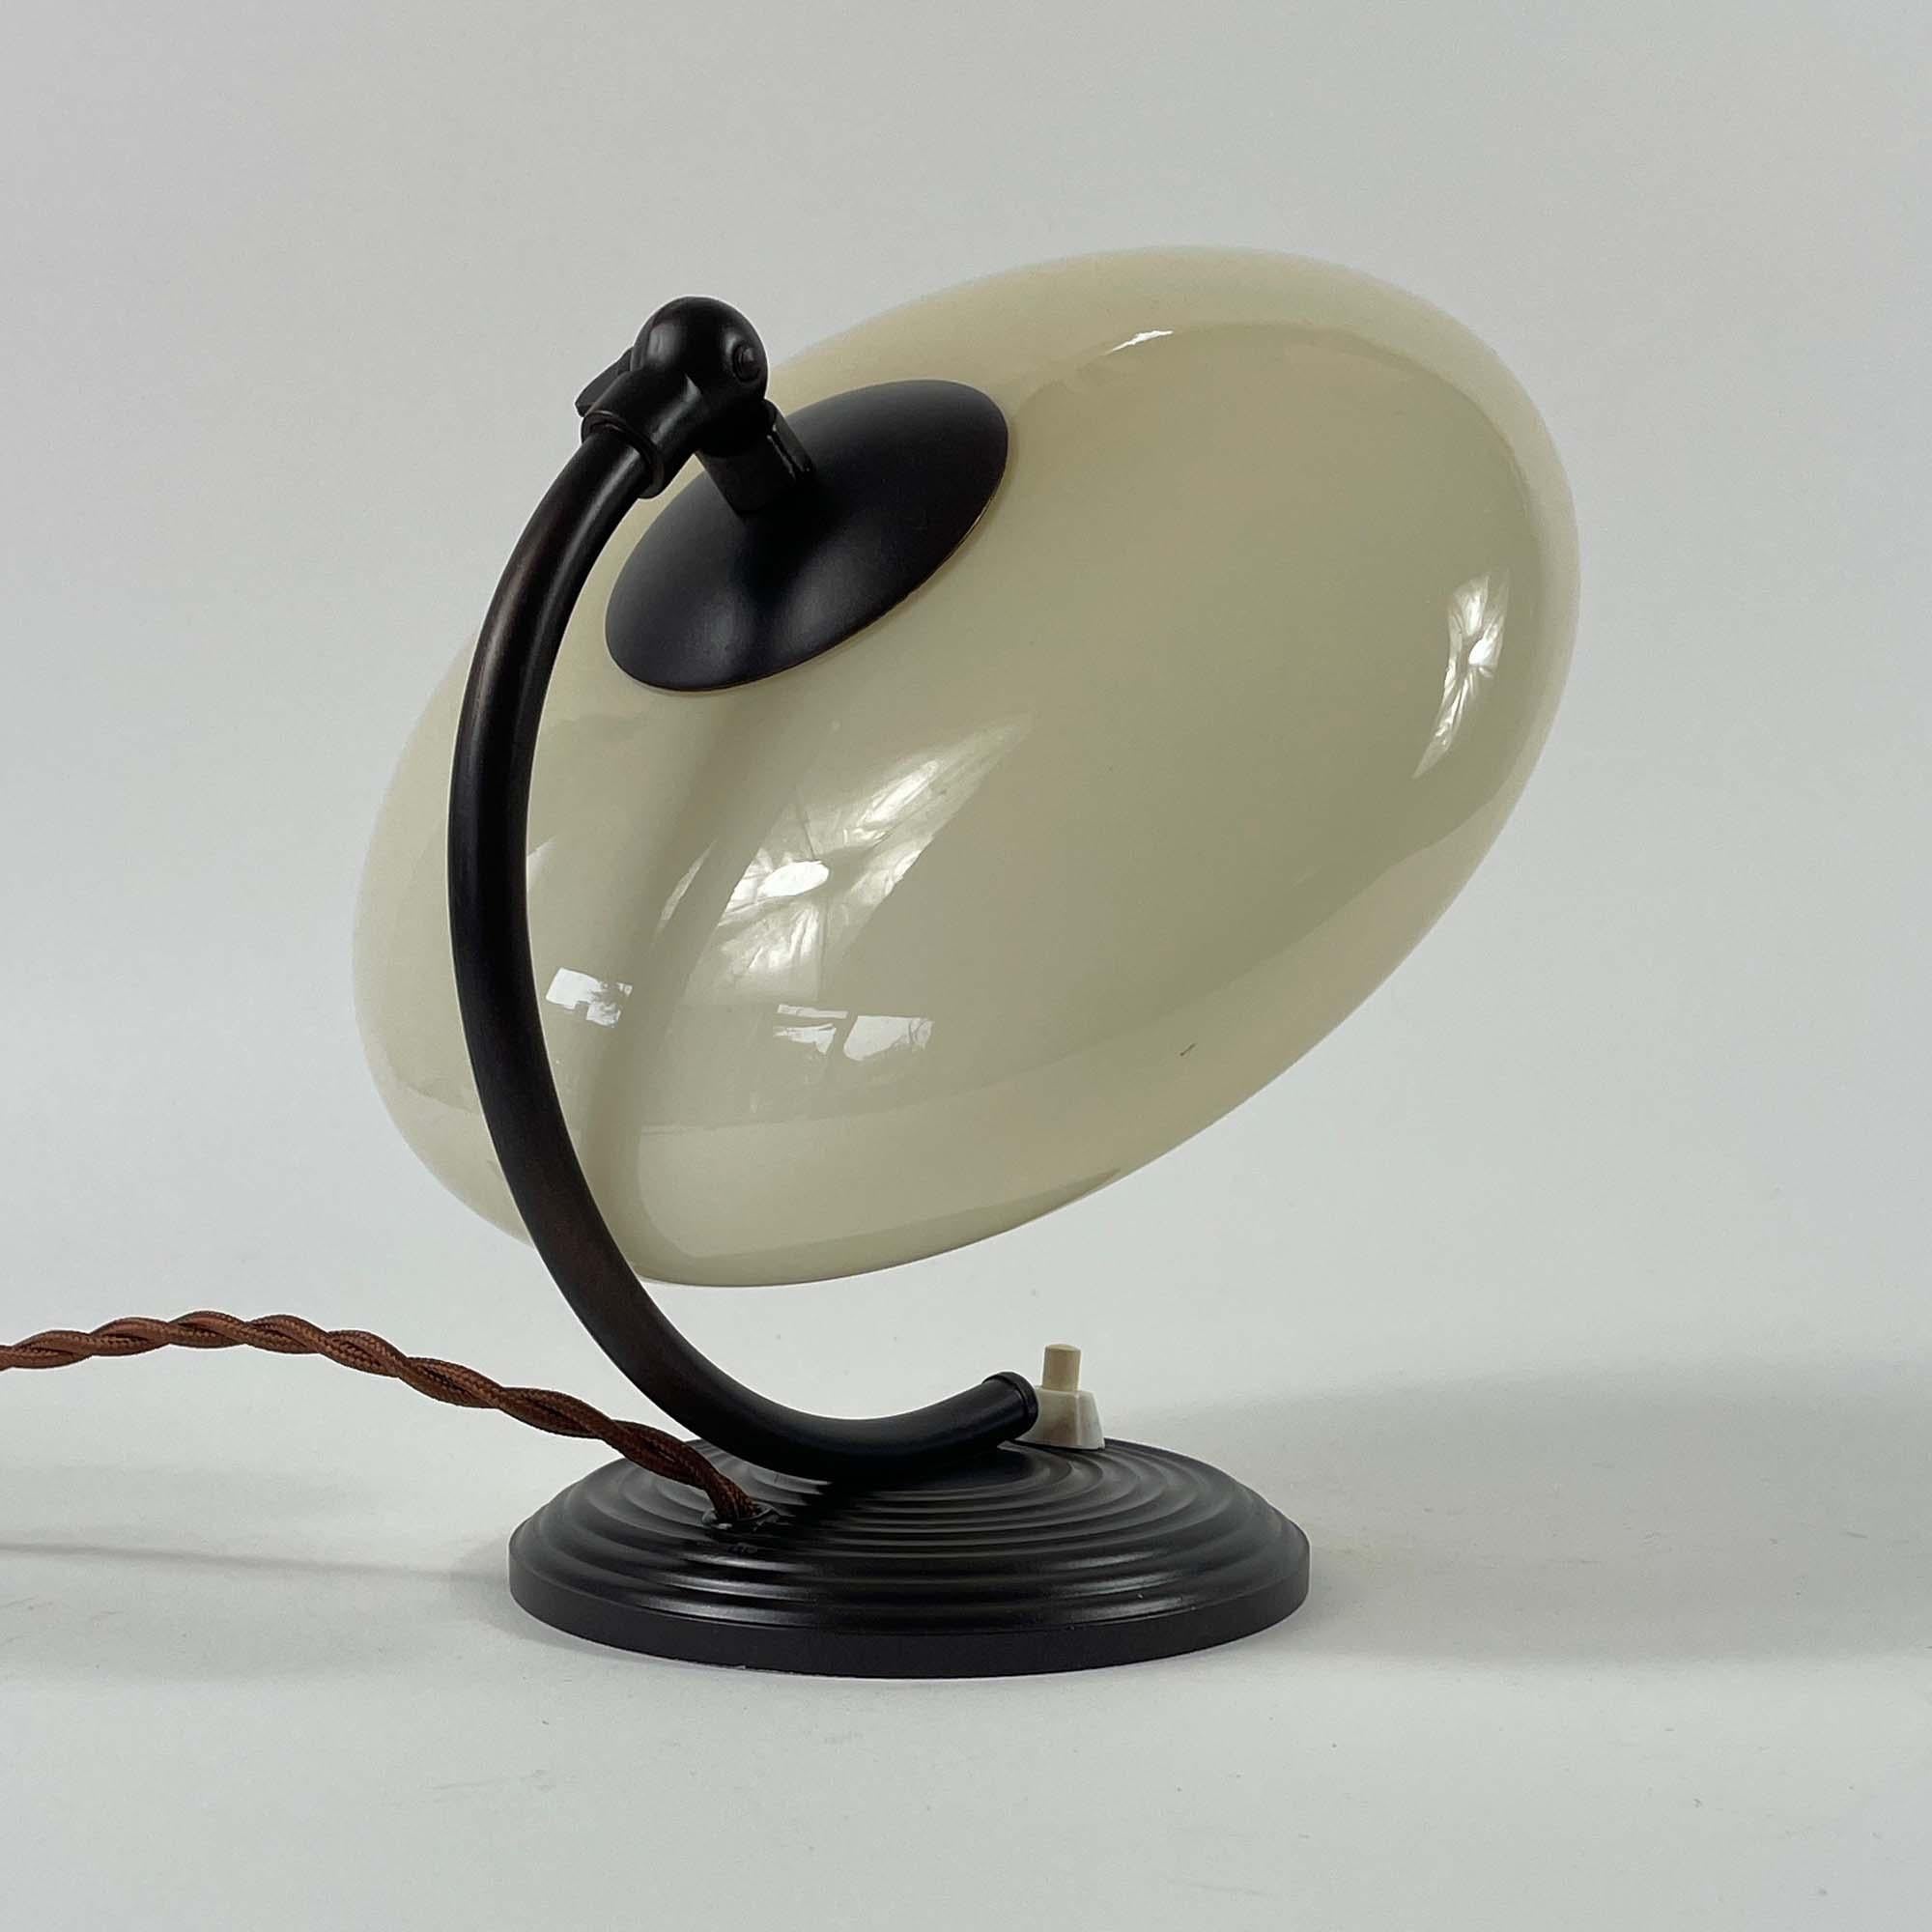 Cette lampe de table ou lampe de chevet Art déco a été conçue et fabriquée en Allemagne pendant la période du Bauhaus, dans les années 1920-1930.

Elle est dotée d'un abat-jour en forme d'OVNI en verre opalin de couleur crème/sable et d'une